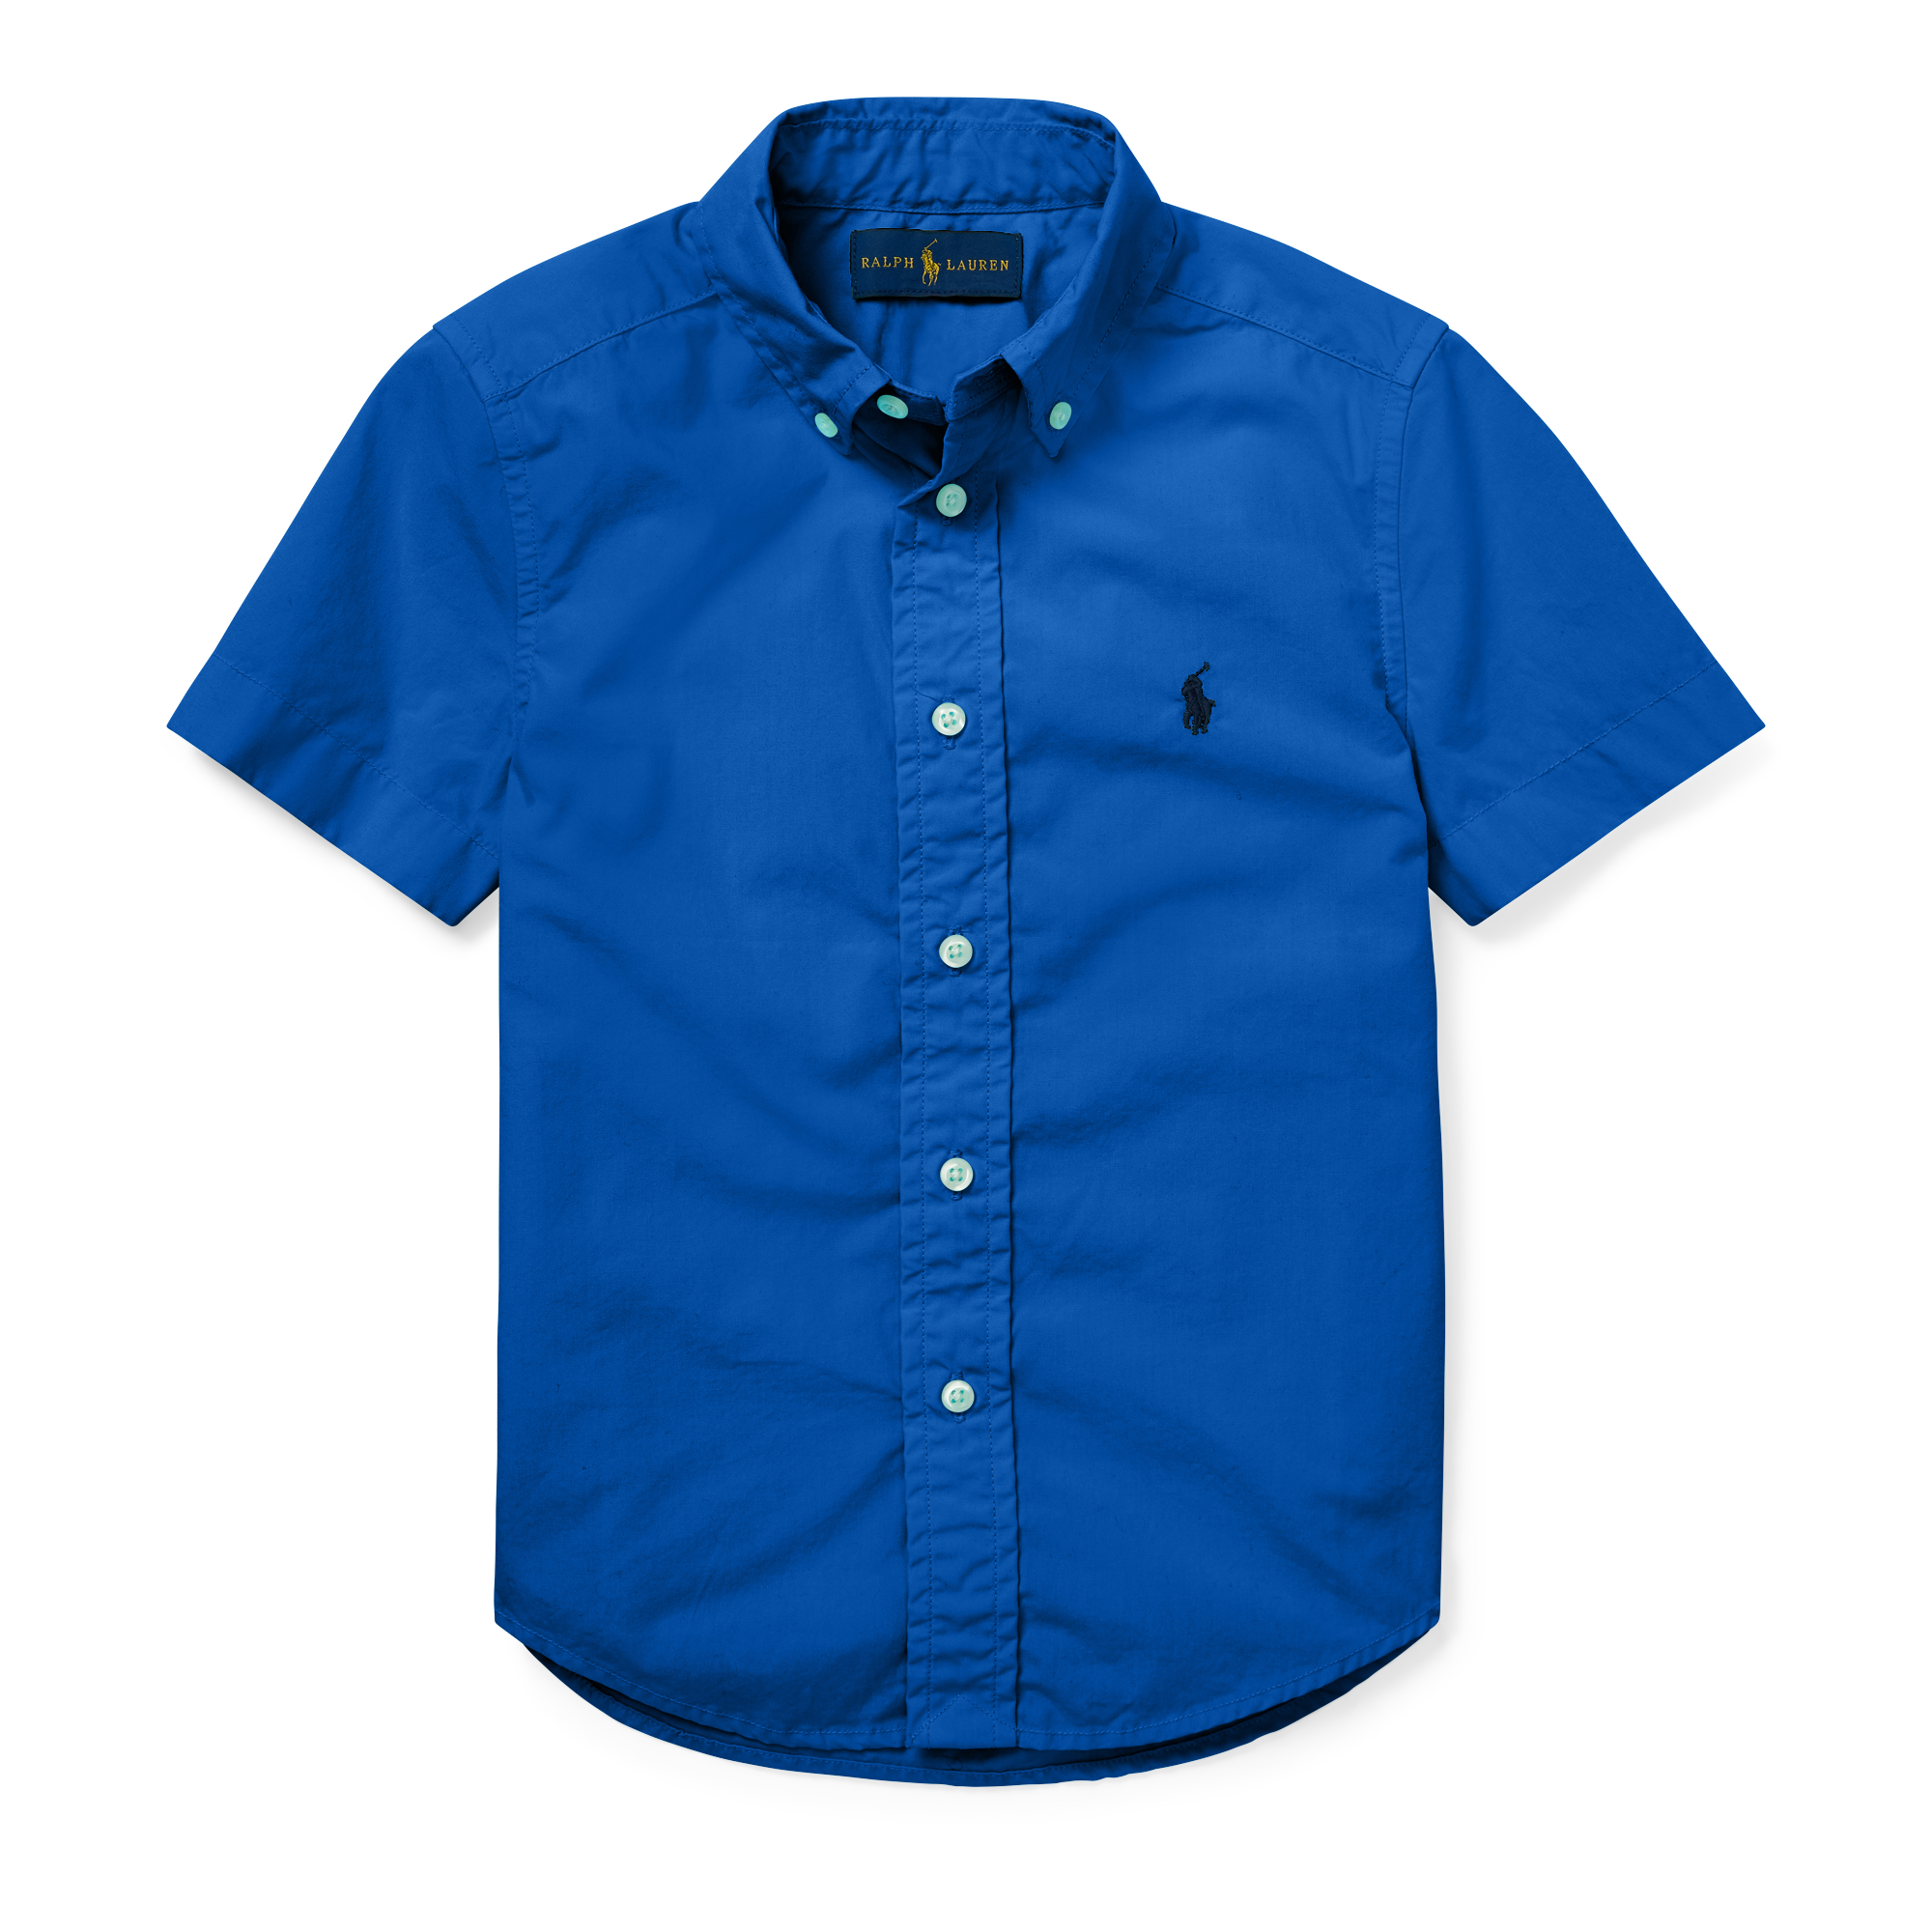 Купить синюю рубашку мужскую. Синяя рубашка. Синяя рубашка мужская. Синяя рубашка с коротким рукавом. Синяя мужская рубашка с коротким рукавом.